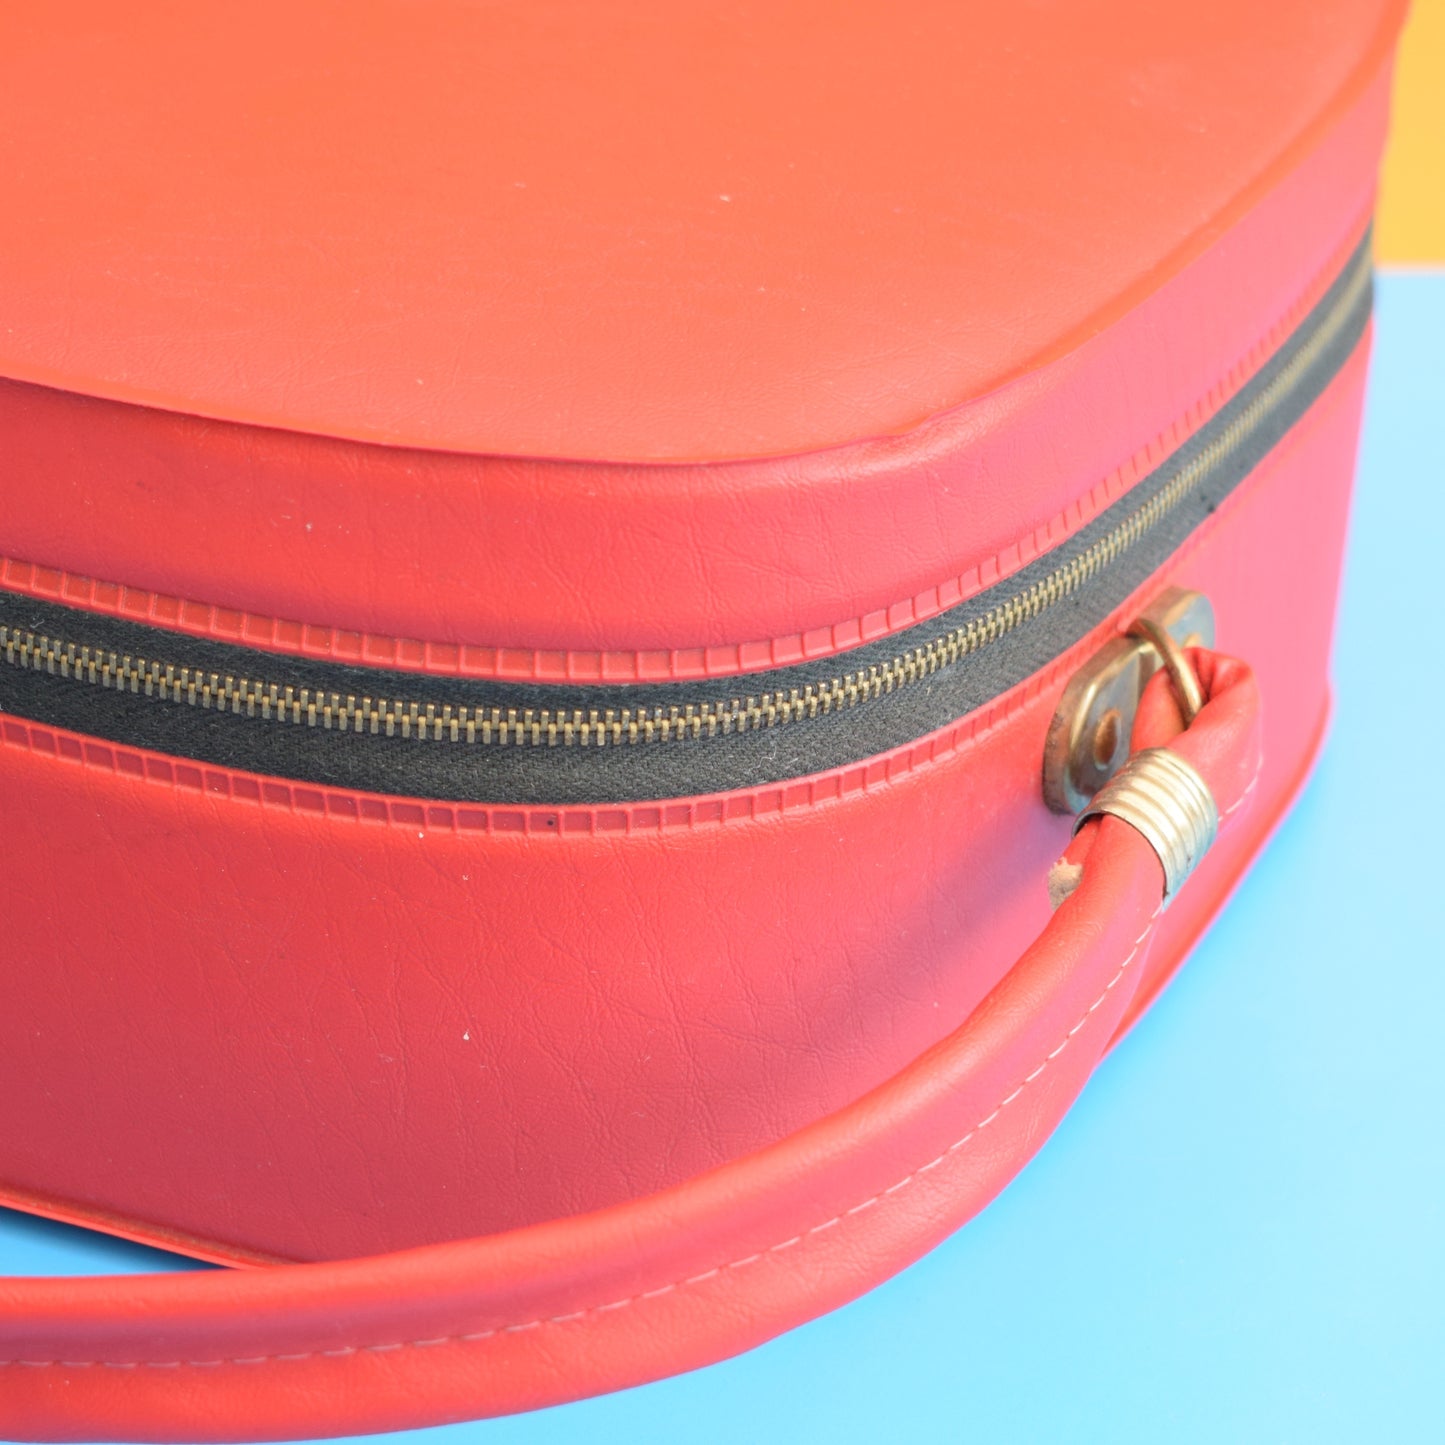 Vintage 1960s Suitcase or Vanity Case - Red - Unused